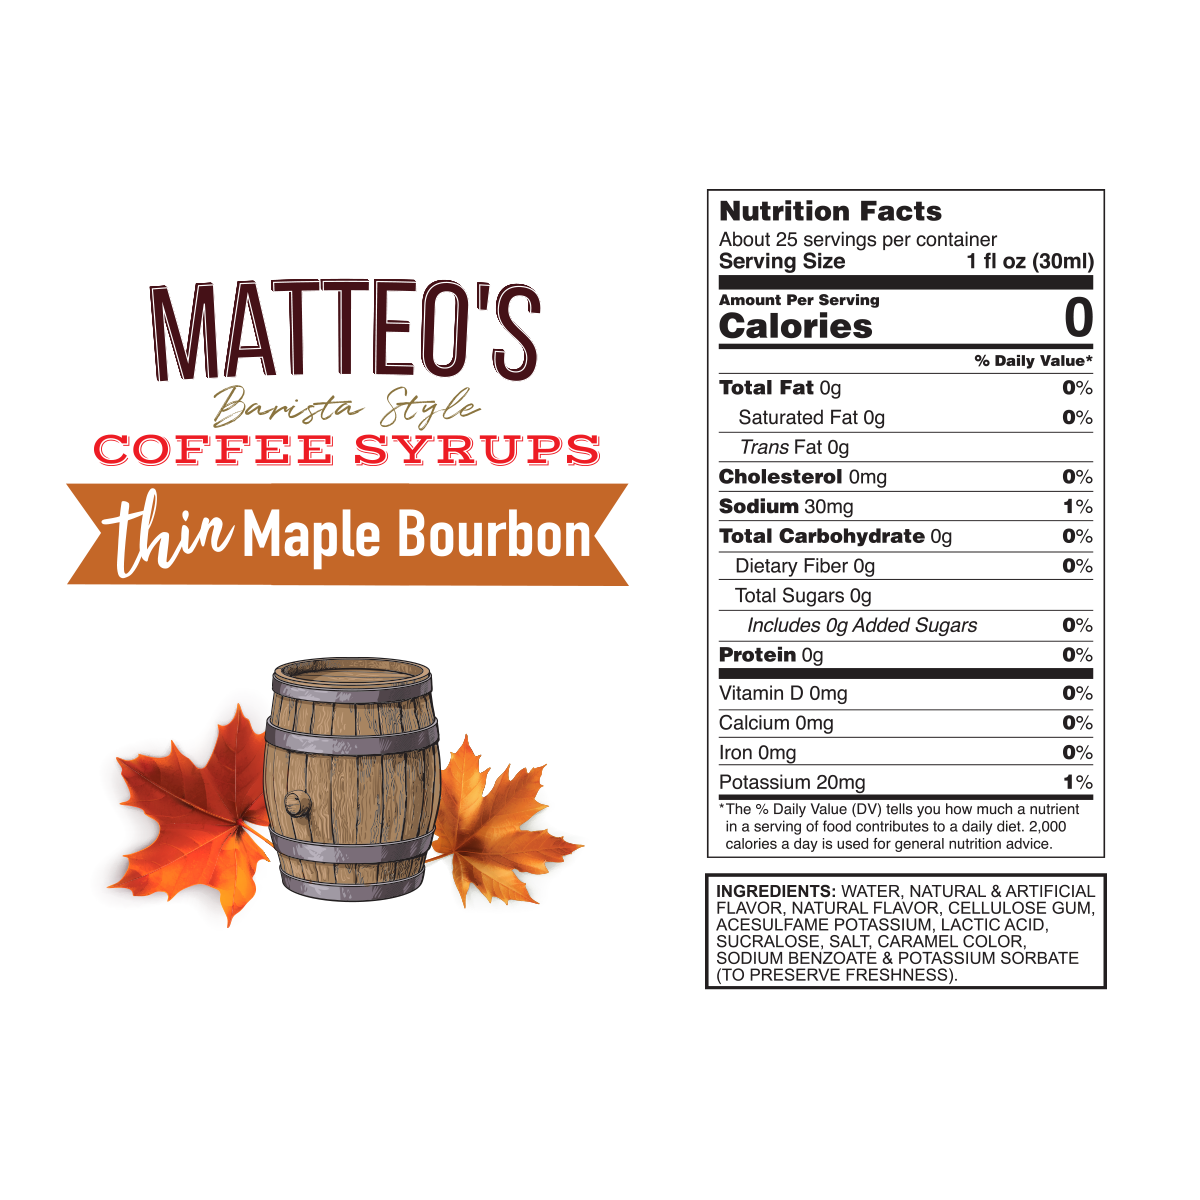 Matteo's Lot de 2 sirops aromatisants pour café sans sucre, cannelle vanille,  délicieux sirop de café, 0 calorie, 0 sirop de café au sucre, compatible  avec le régime cétogène, 720,1 g